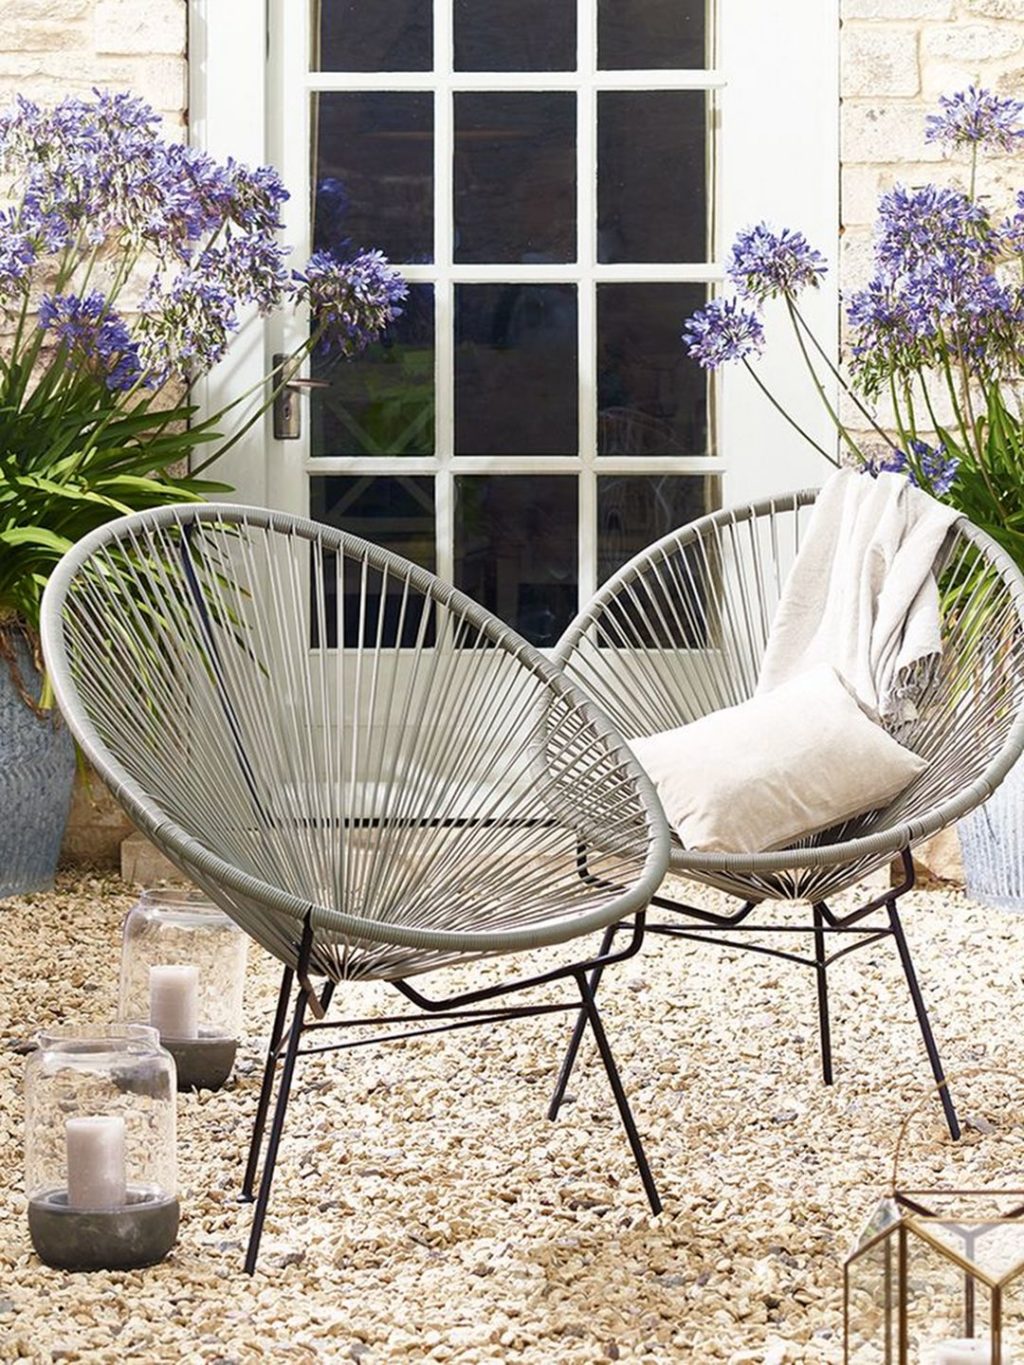 Cool Garden Chair Ideas